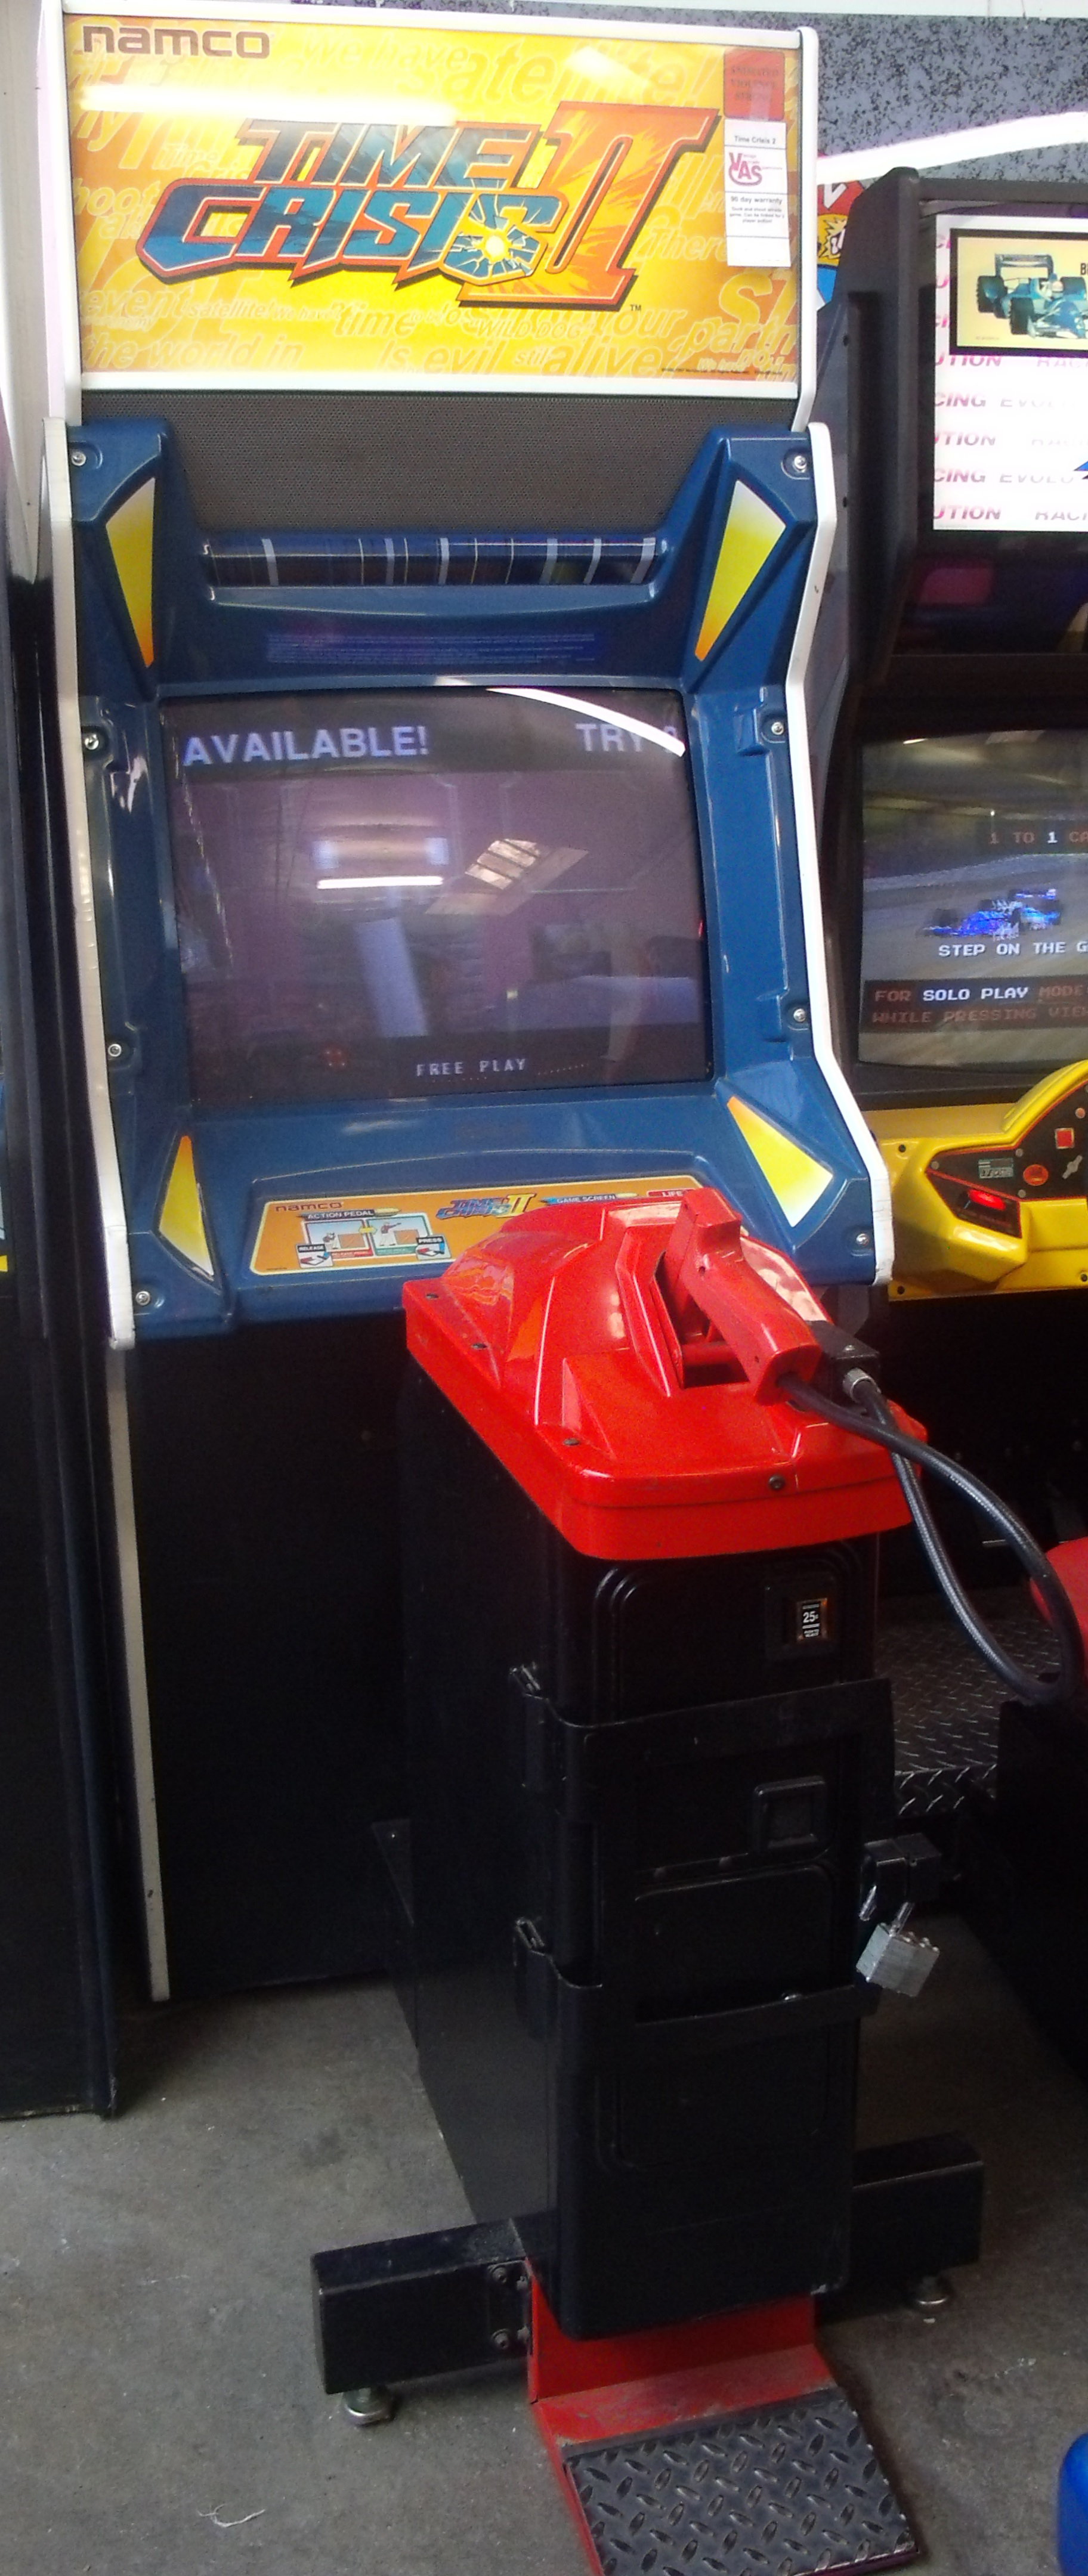 time crisis arcade game